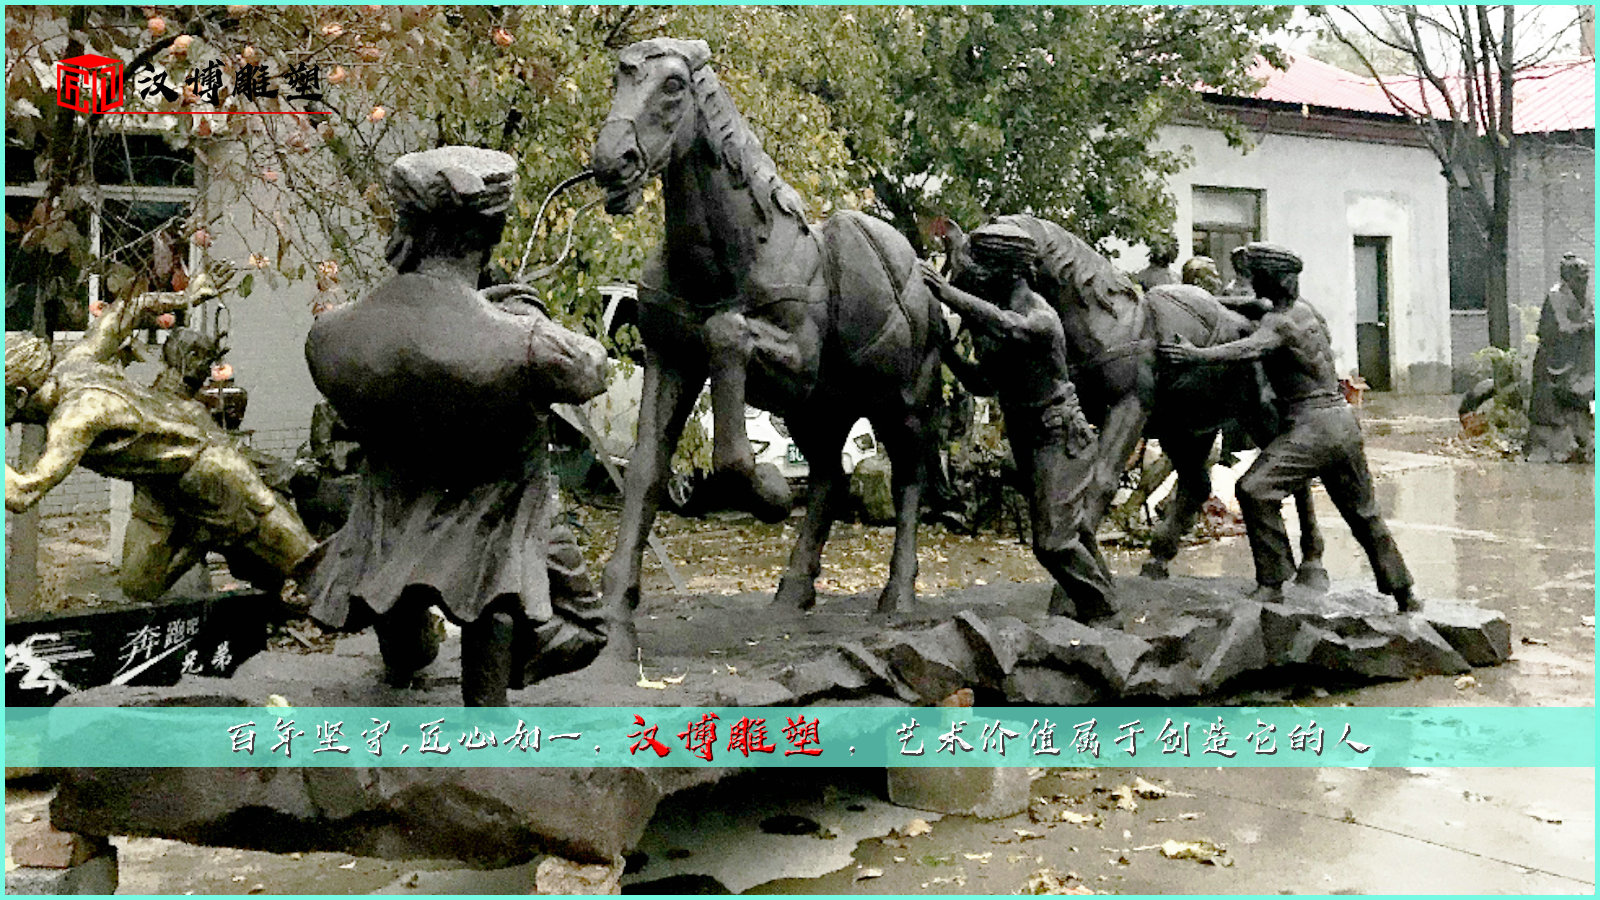 马帮雕塑,大型雕像,民俗雕塑